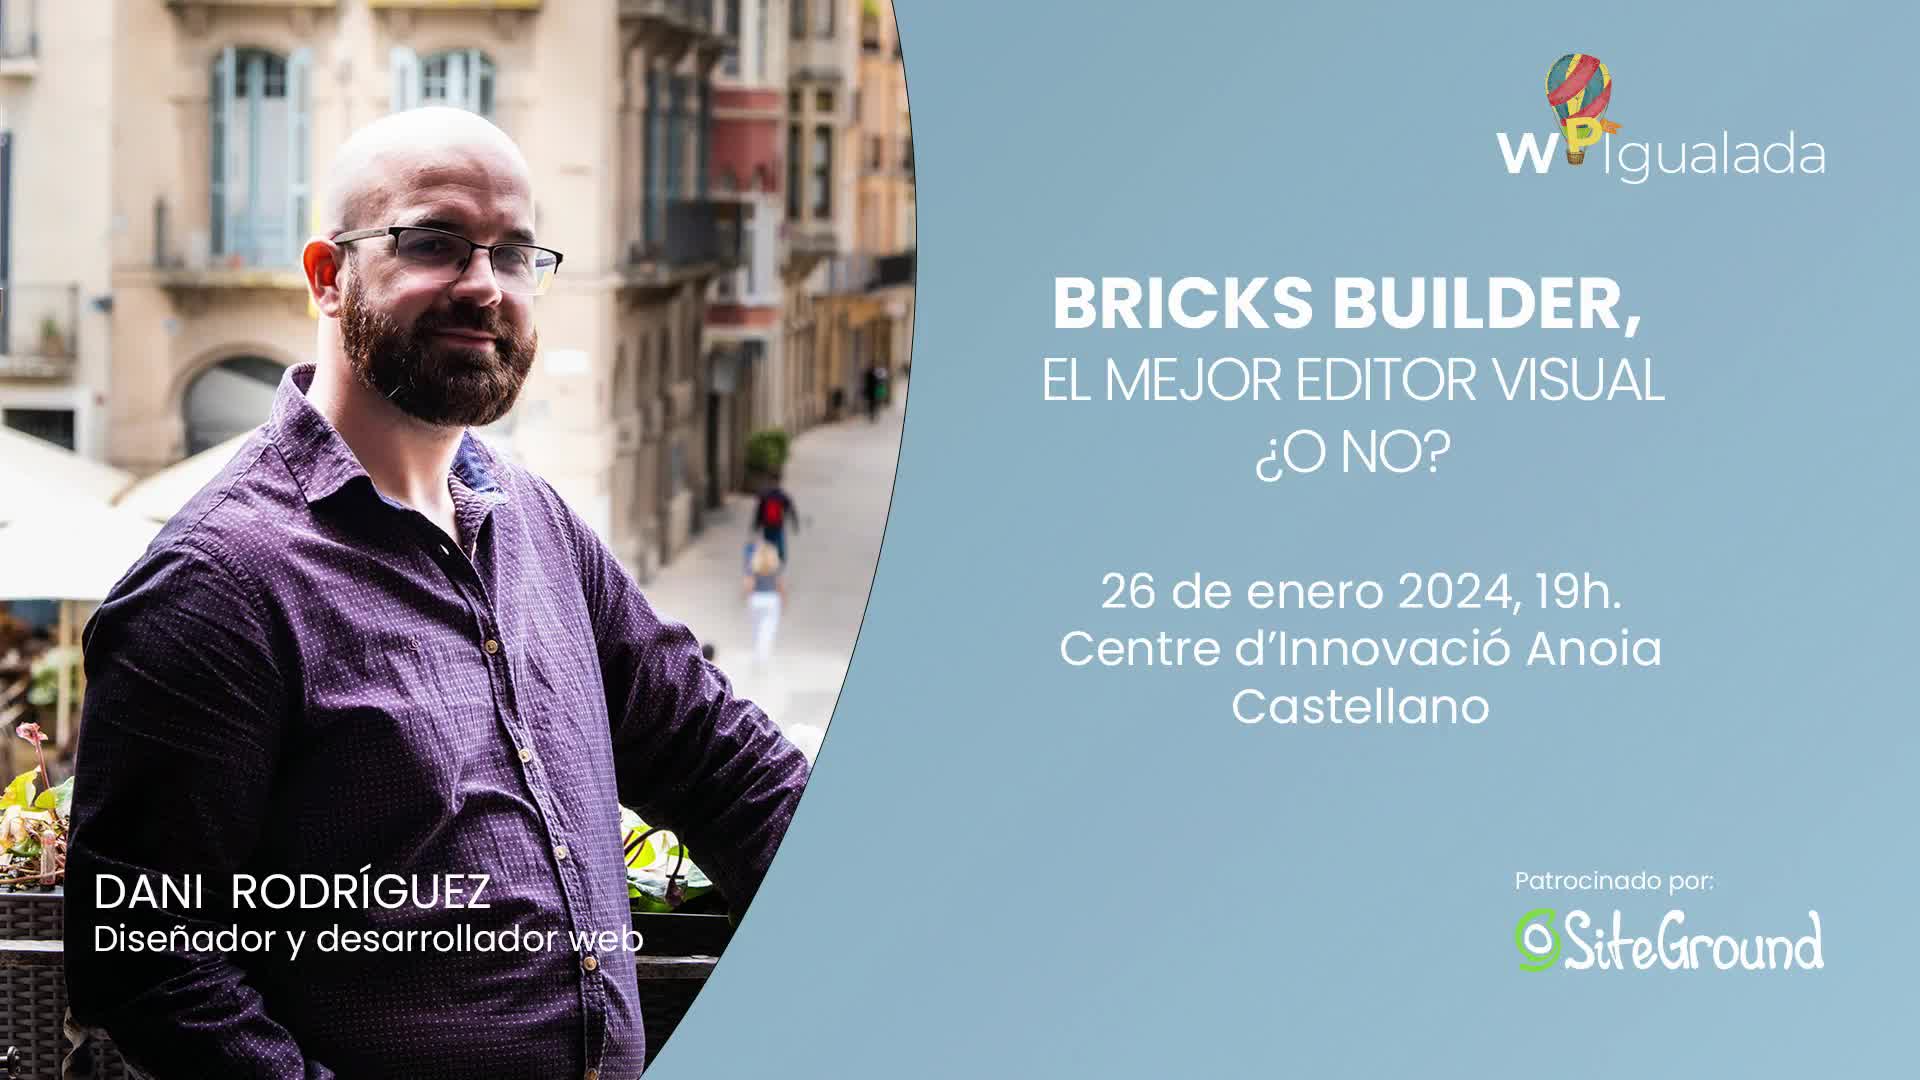 Bricks Builder, el mejor editor visual. ¿O no?